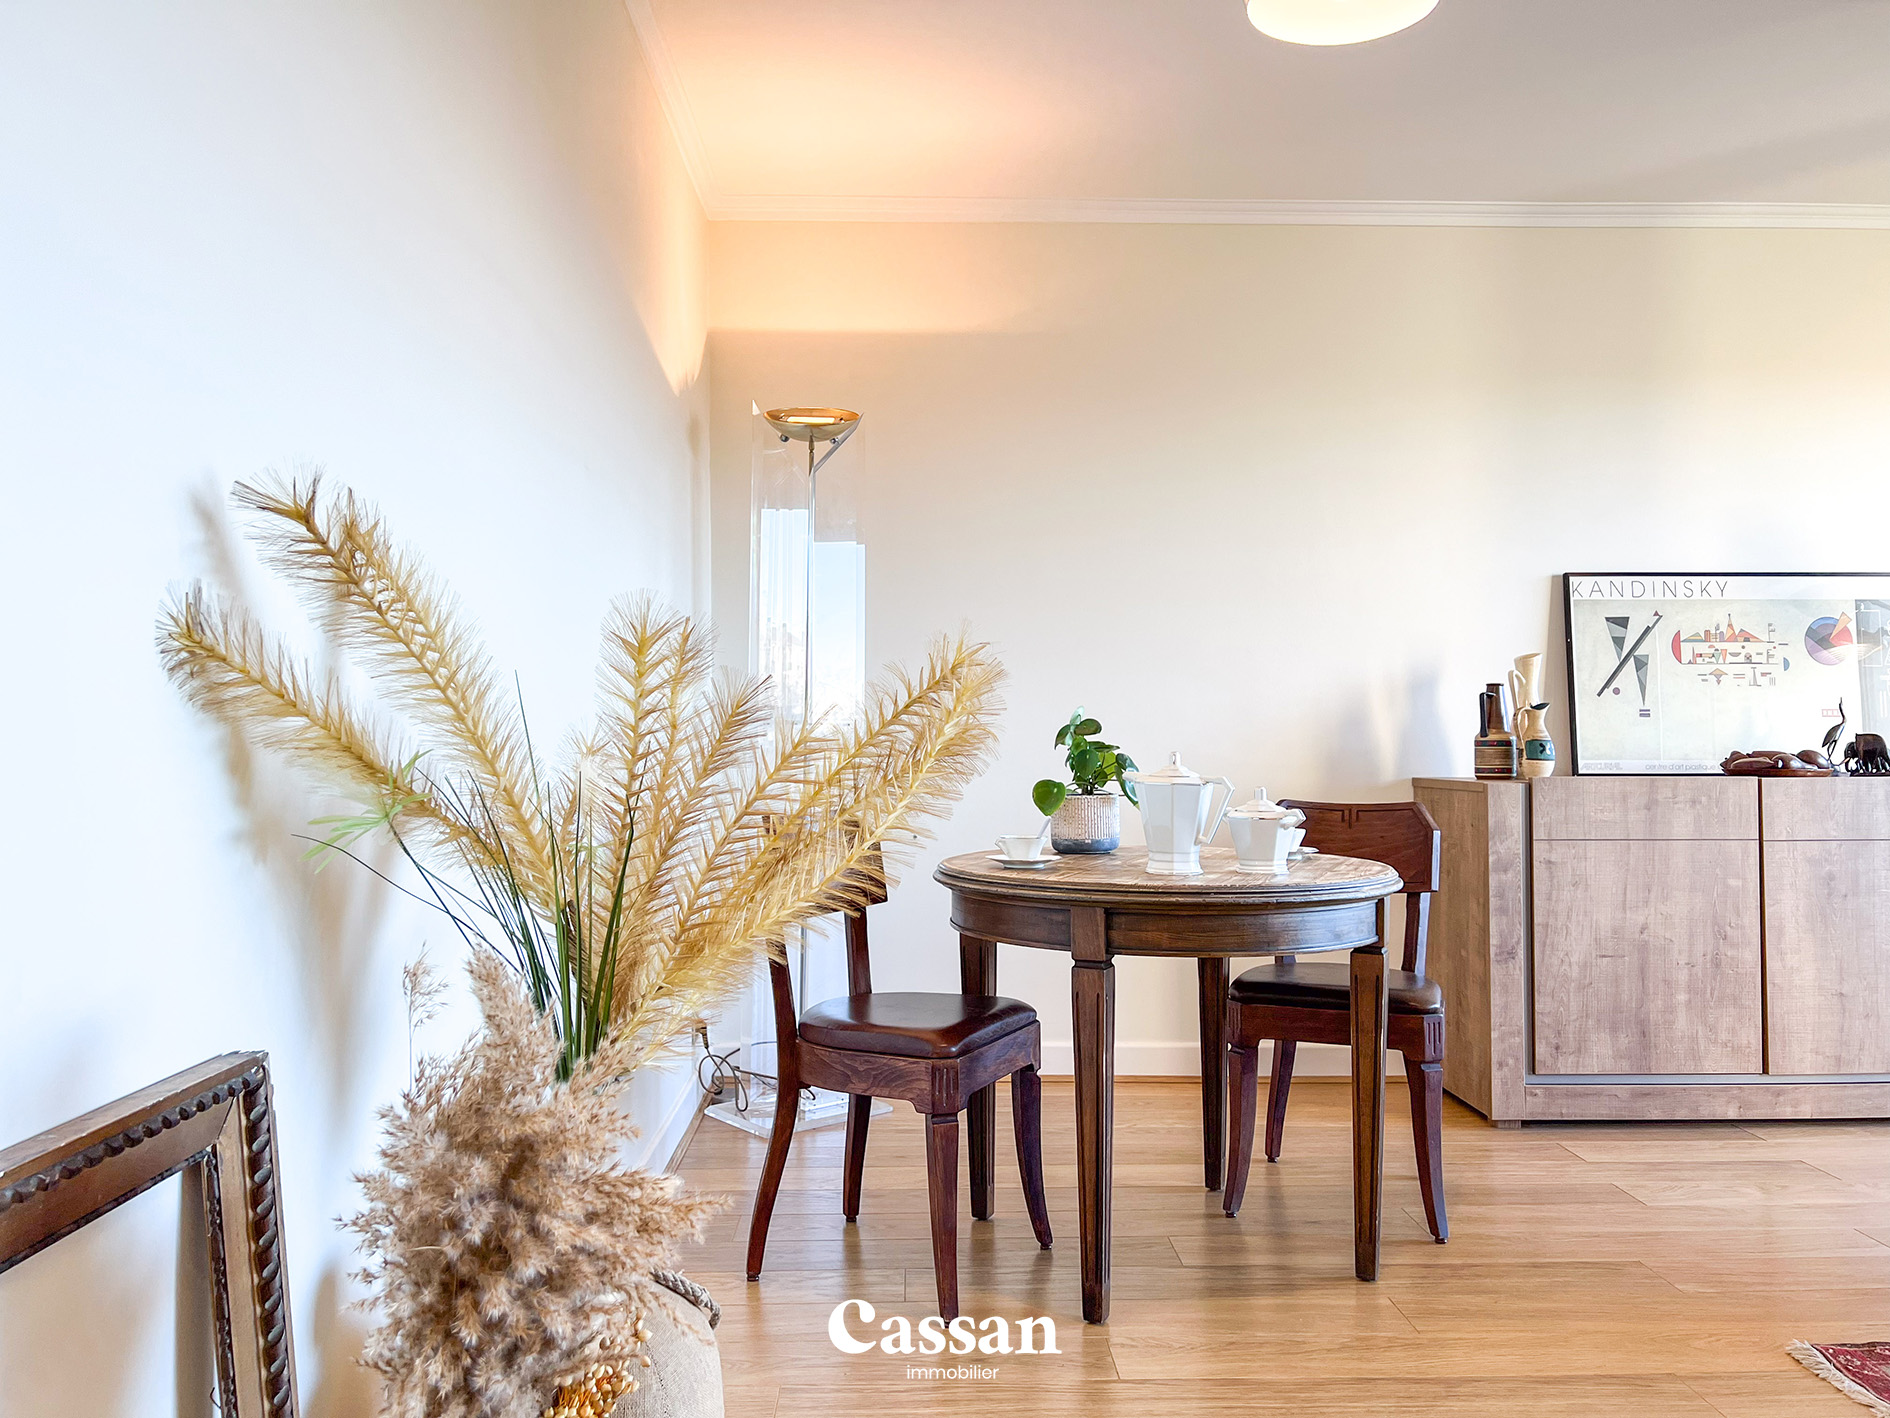 Salle à manger appartement à vendre Aurillac Cassan immobilier agence immobilière